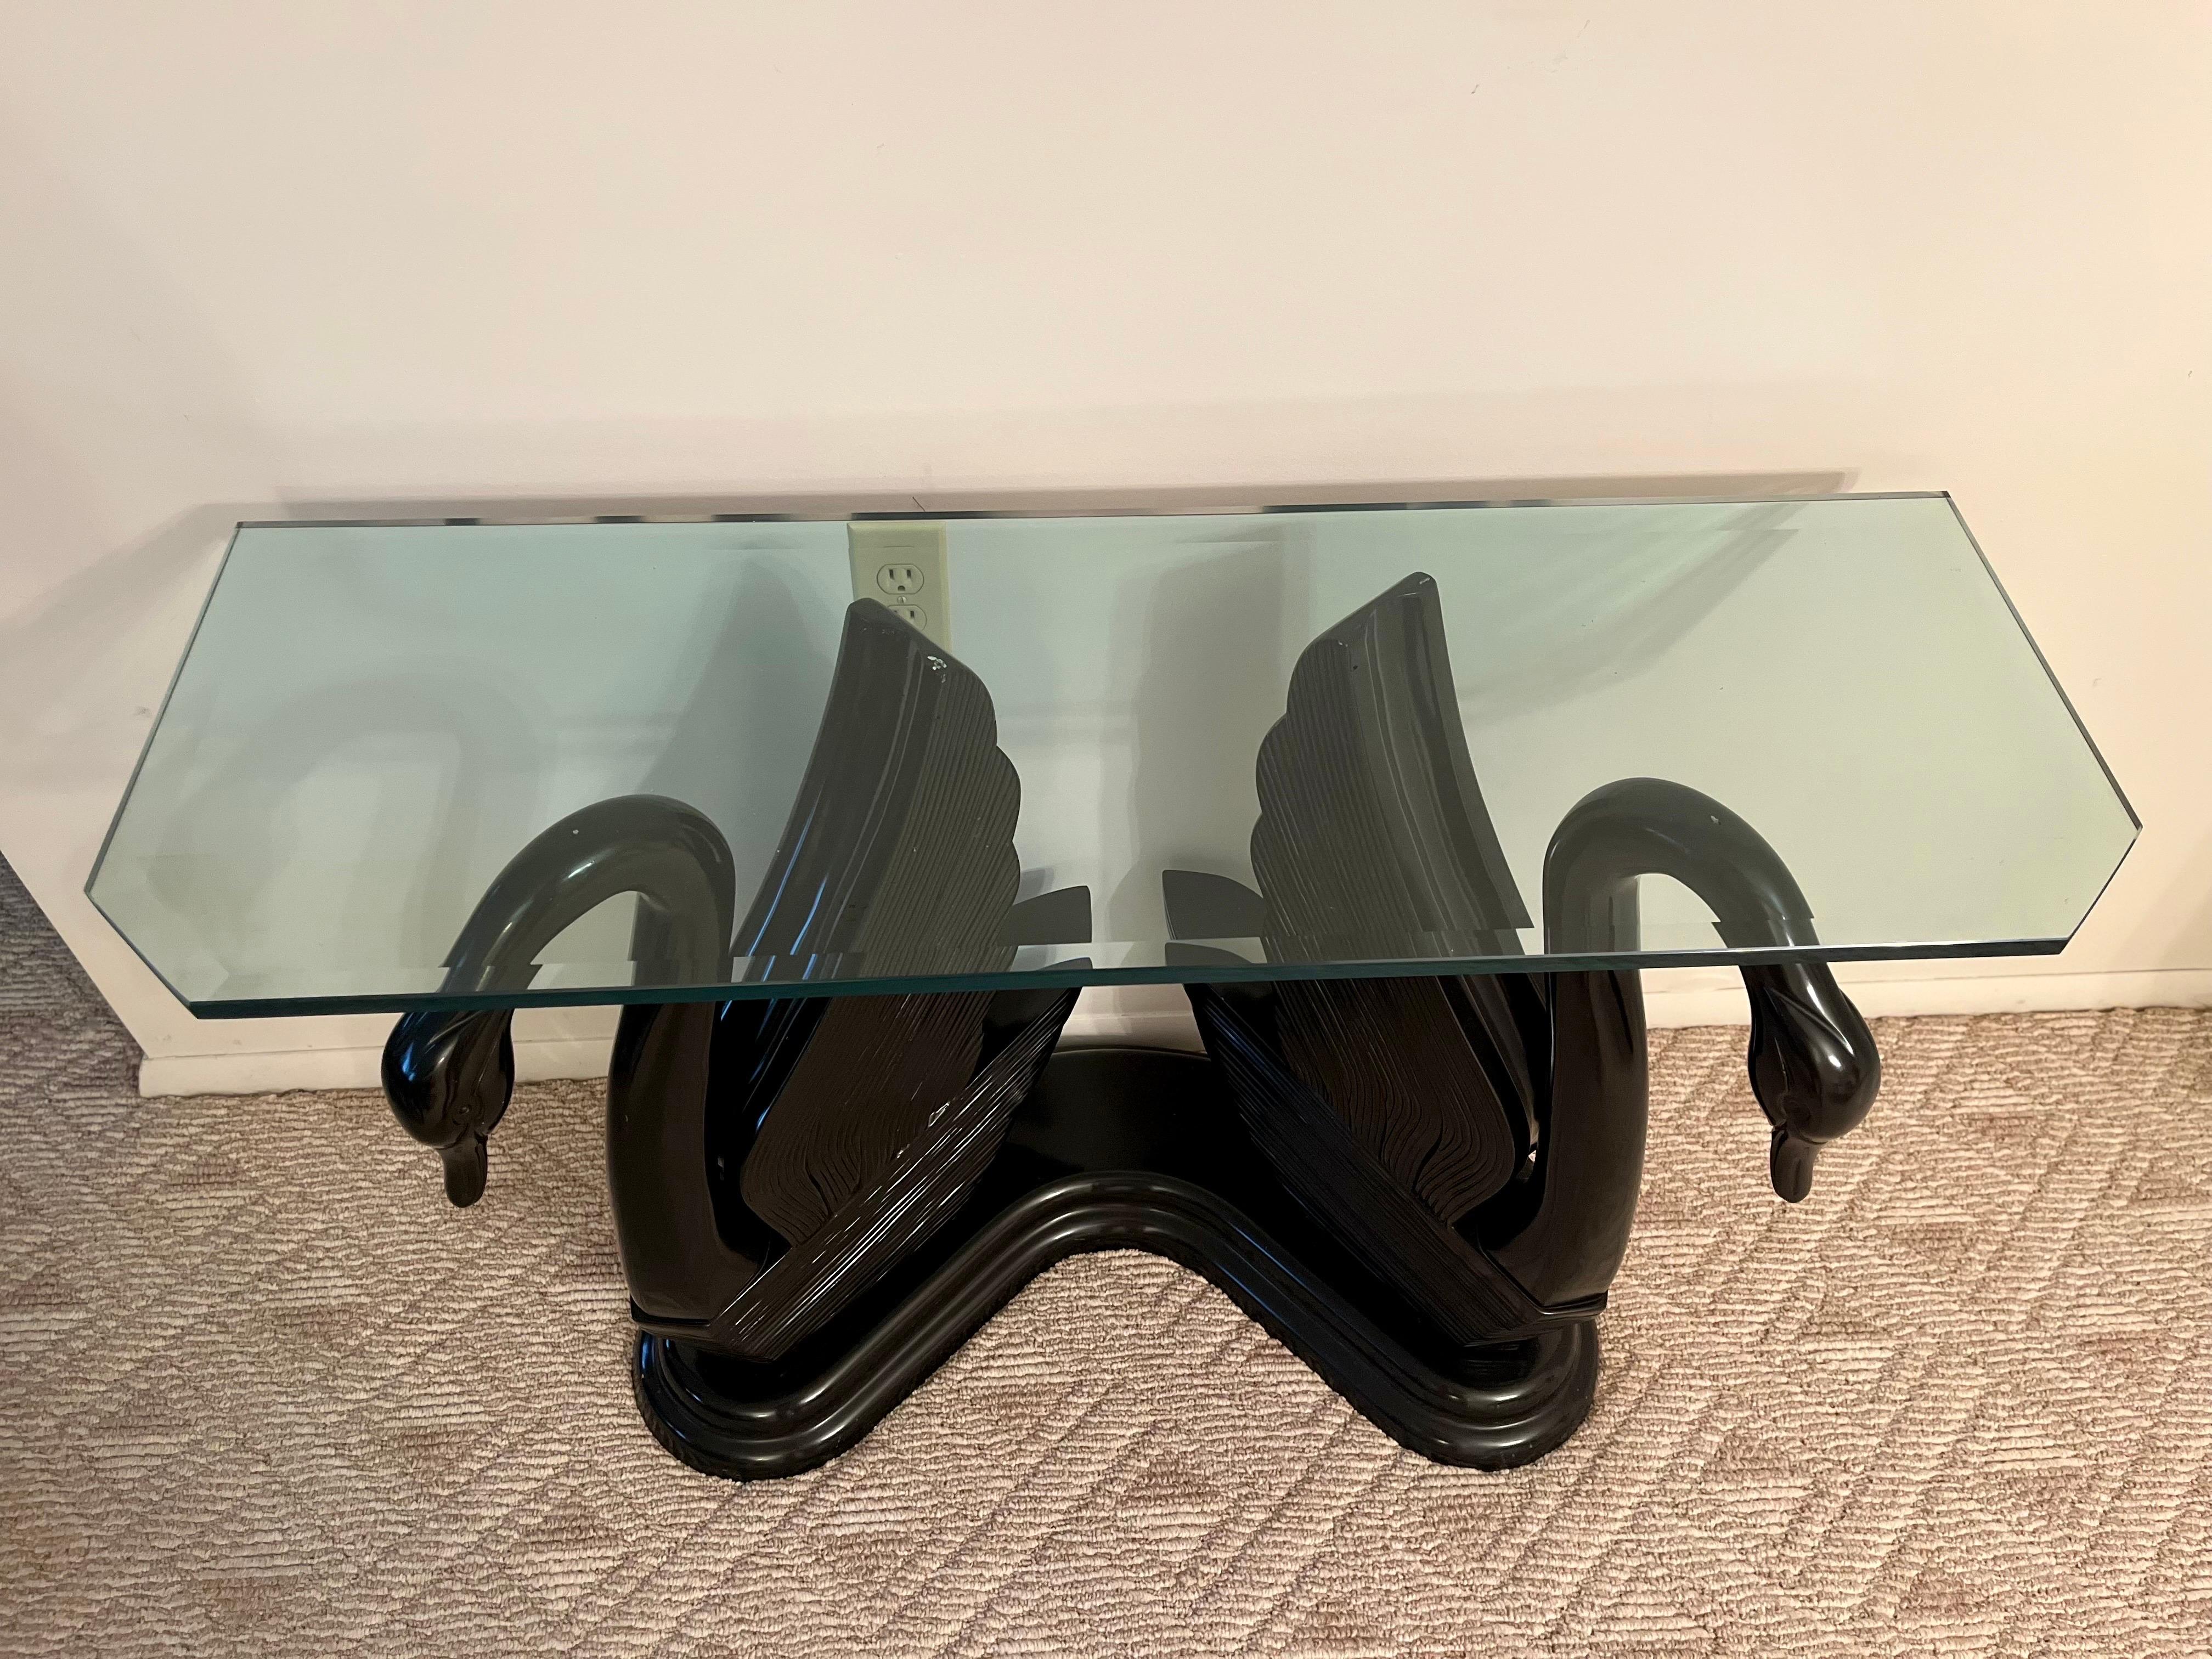 La table console Vintage présente un design sculptural de cygne avec des cygnes opposés fabriqués en résine lourde. Dans le style de la Maison Jansen. Plateau en verre avec bord biseauté. Le verre mesure 45